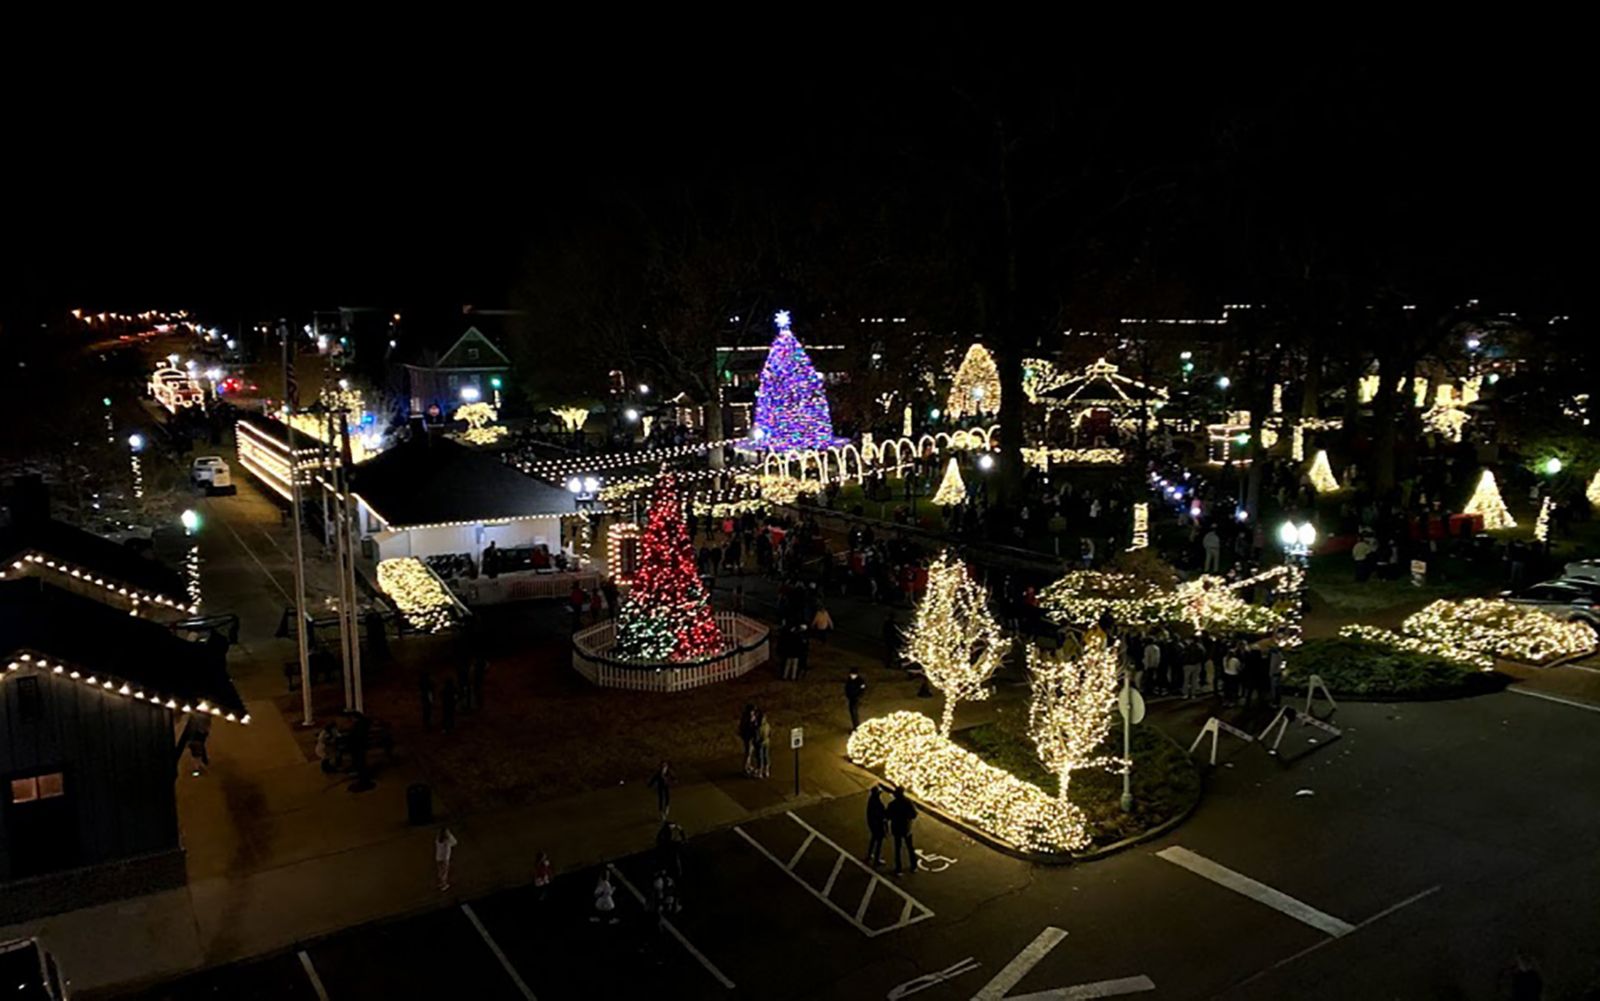 overhead view of Christmas lights